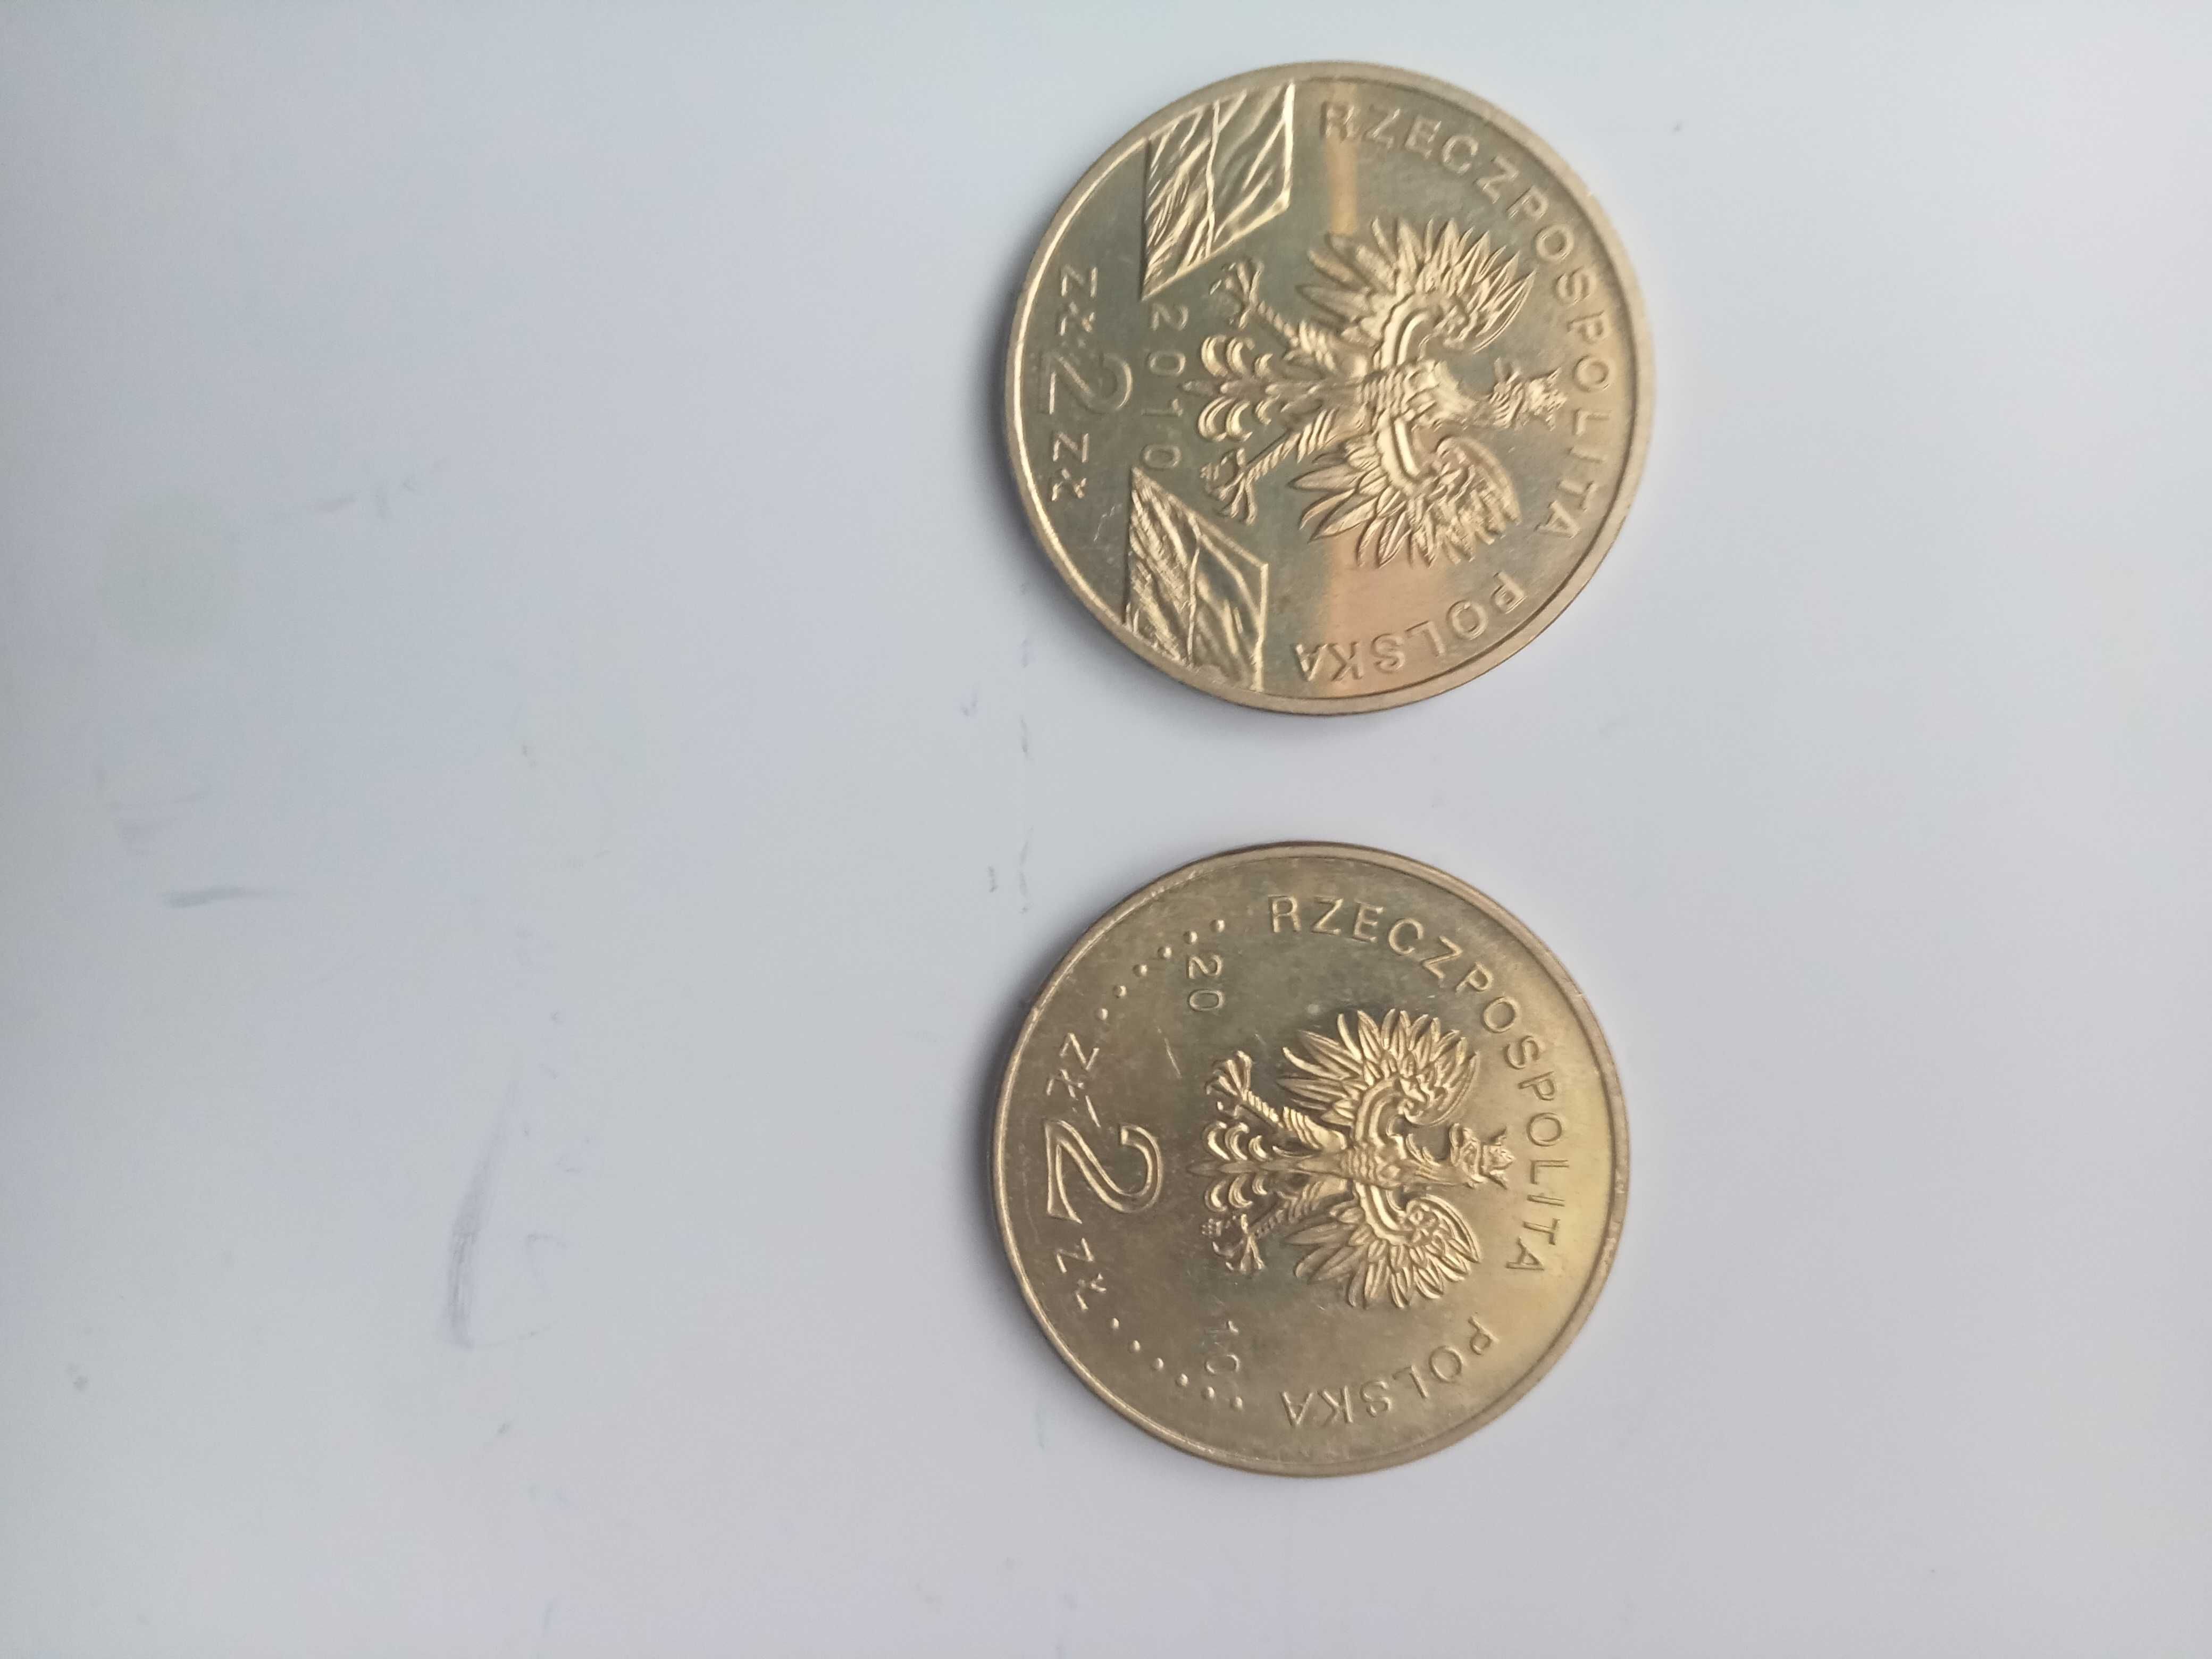 Польские юбилейные монеты 2zl